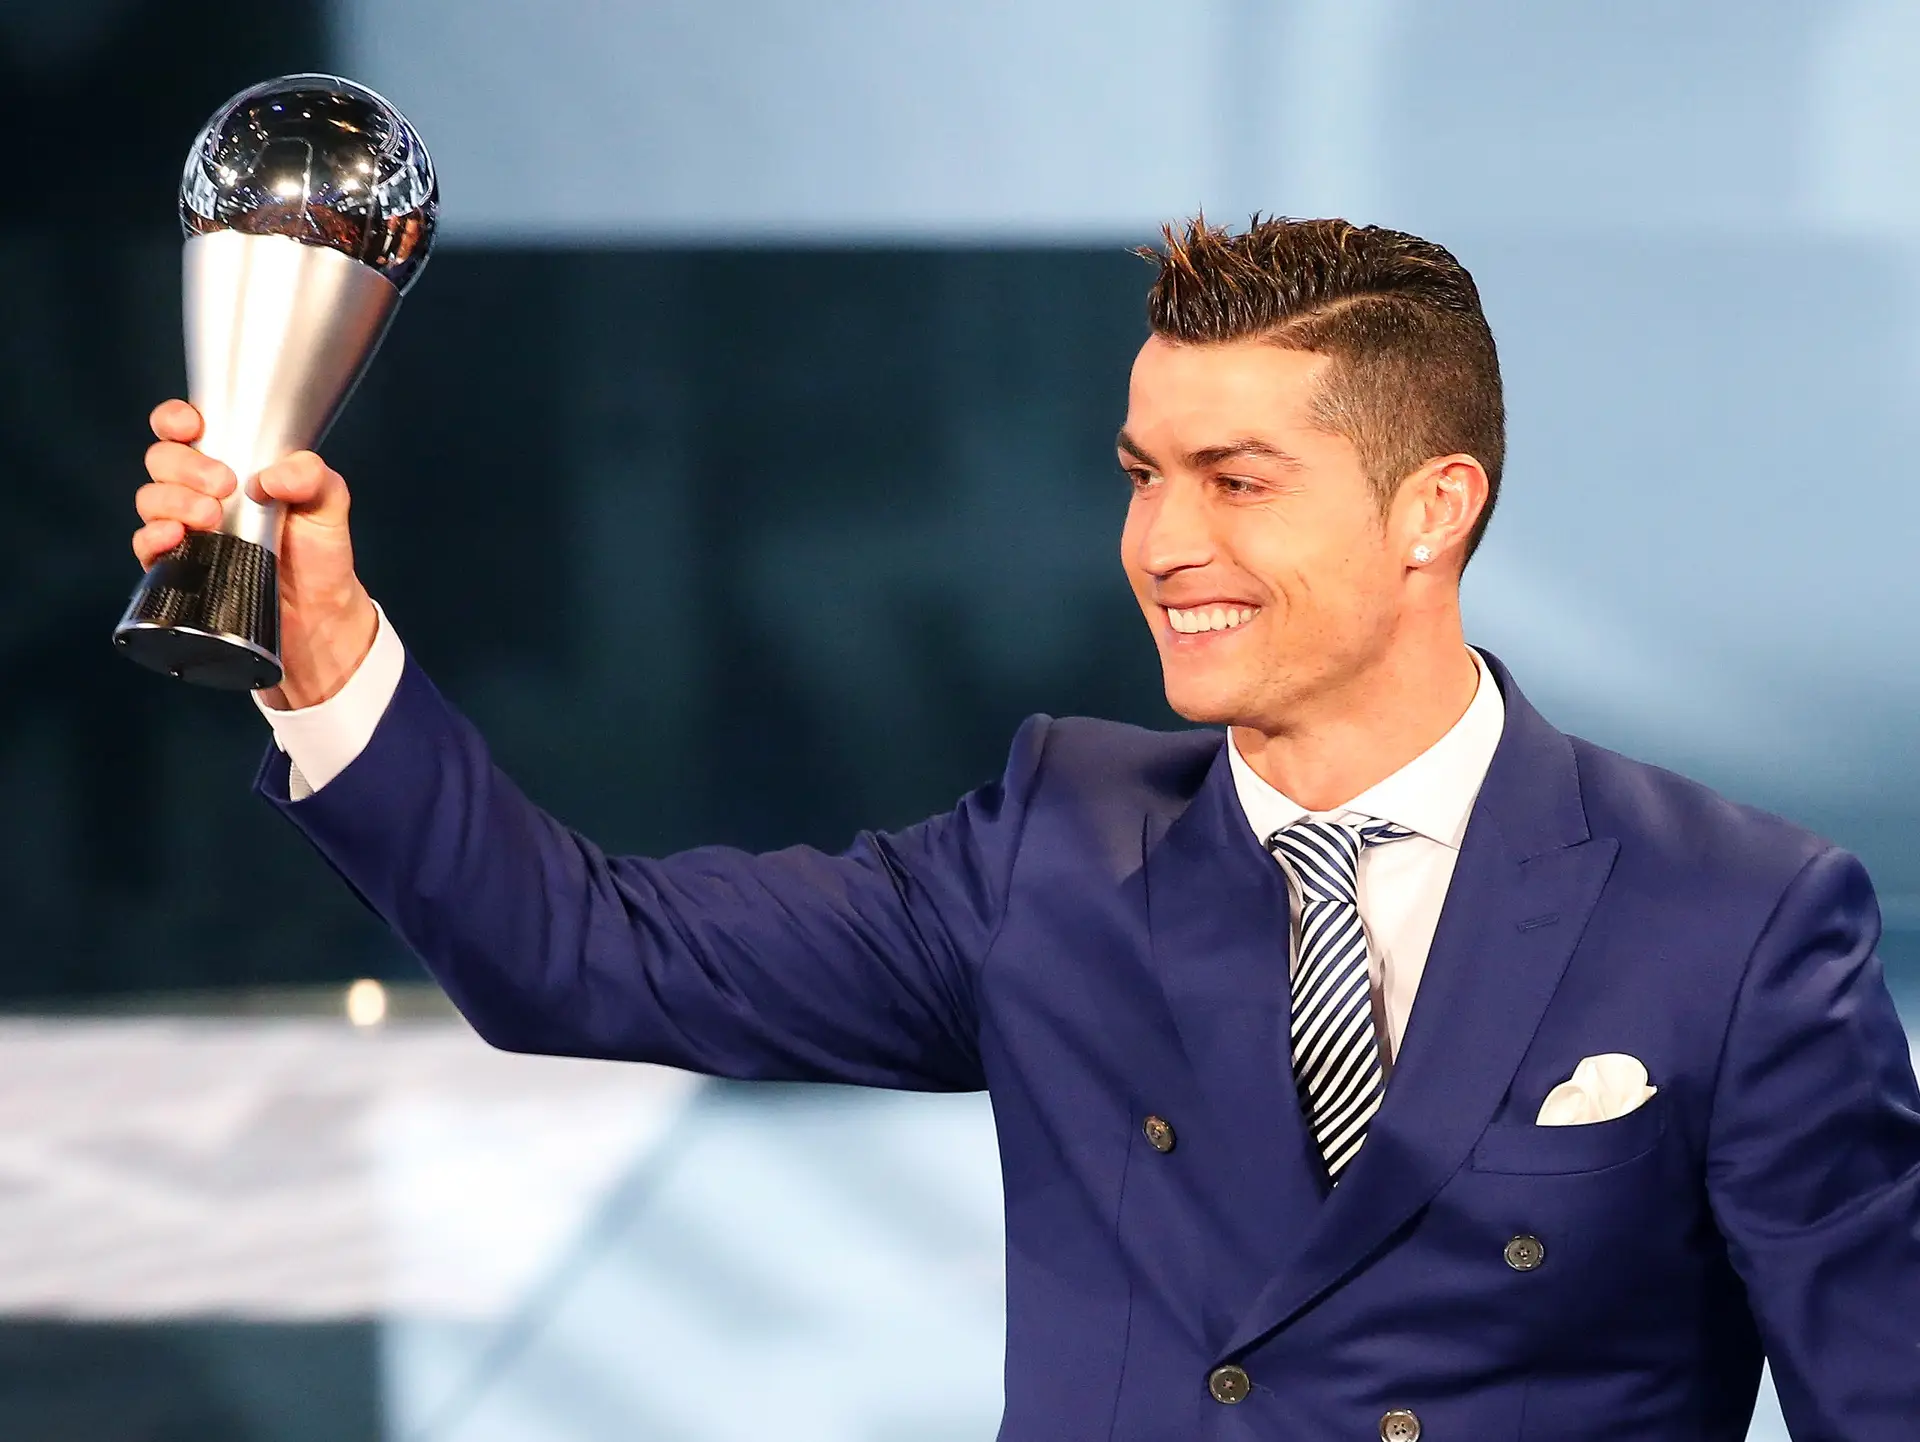 Cristiano Ronaldo. O vencedor anunciado no seu ″melhor ano″